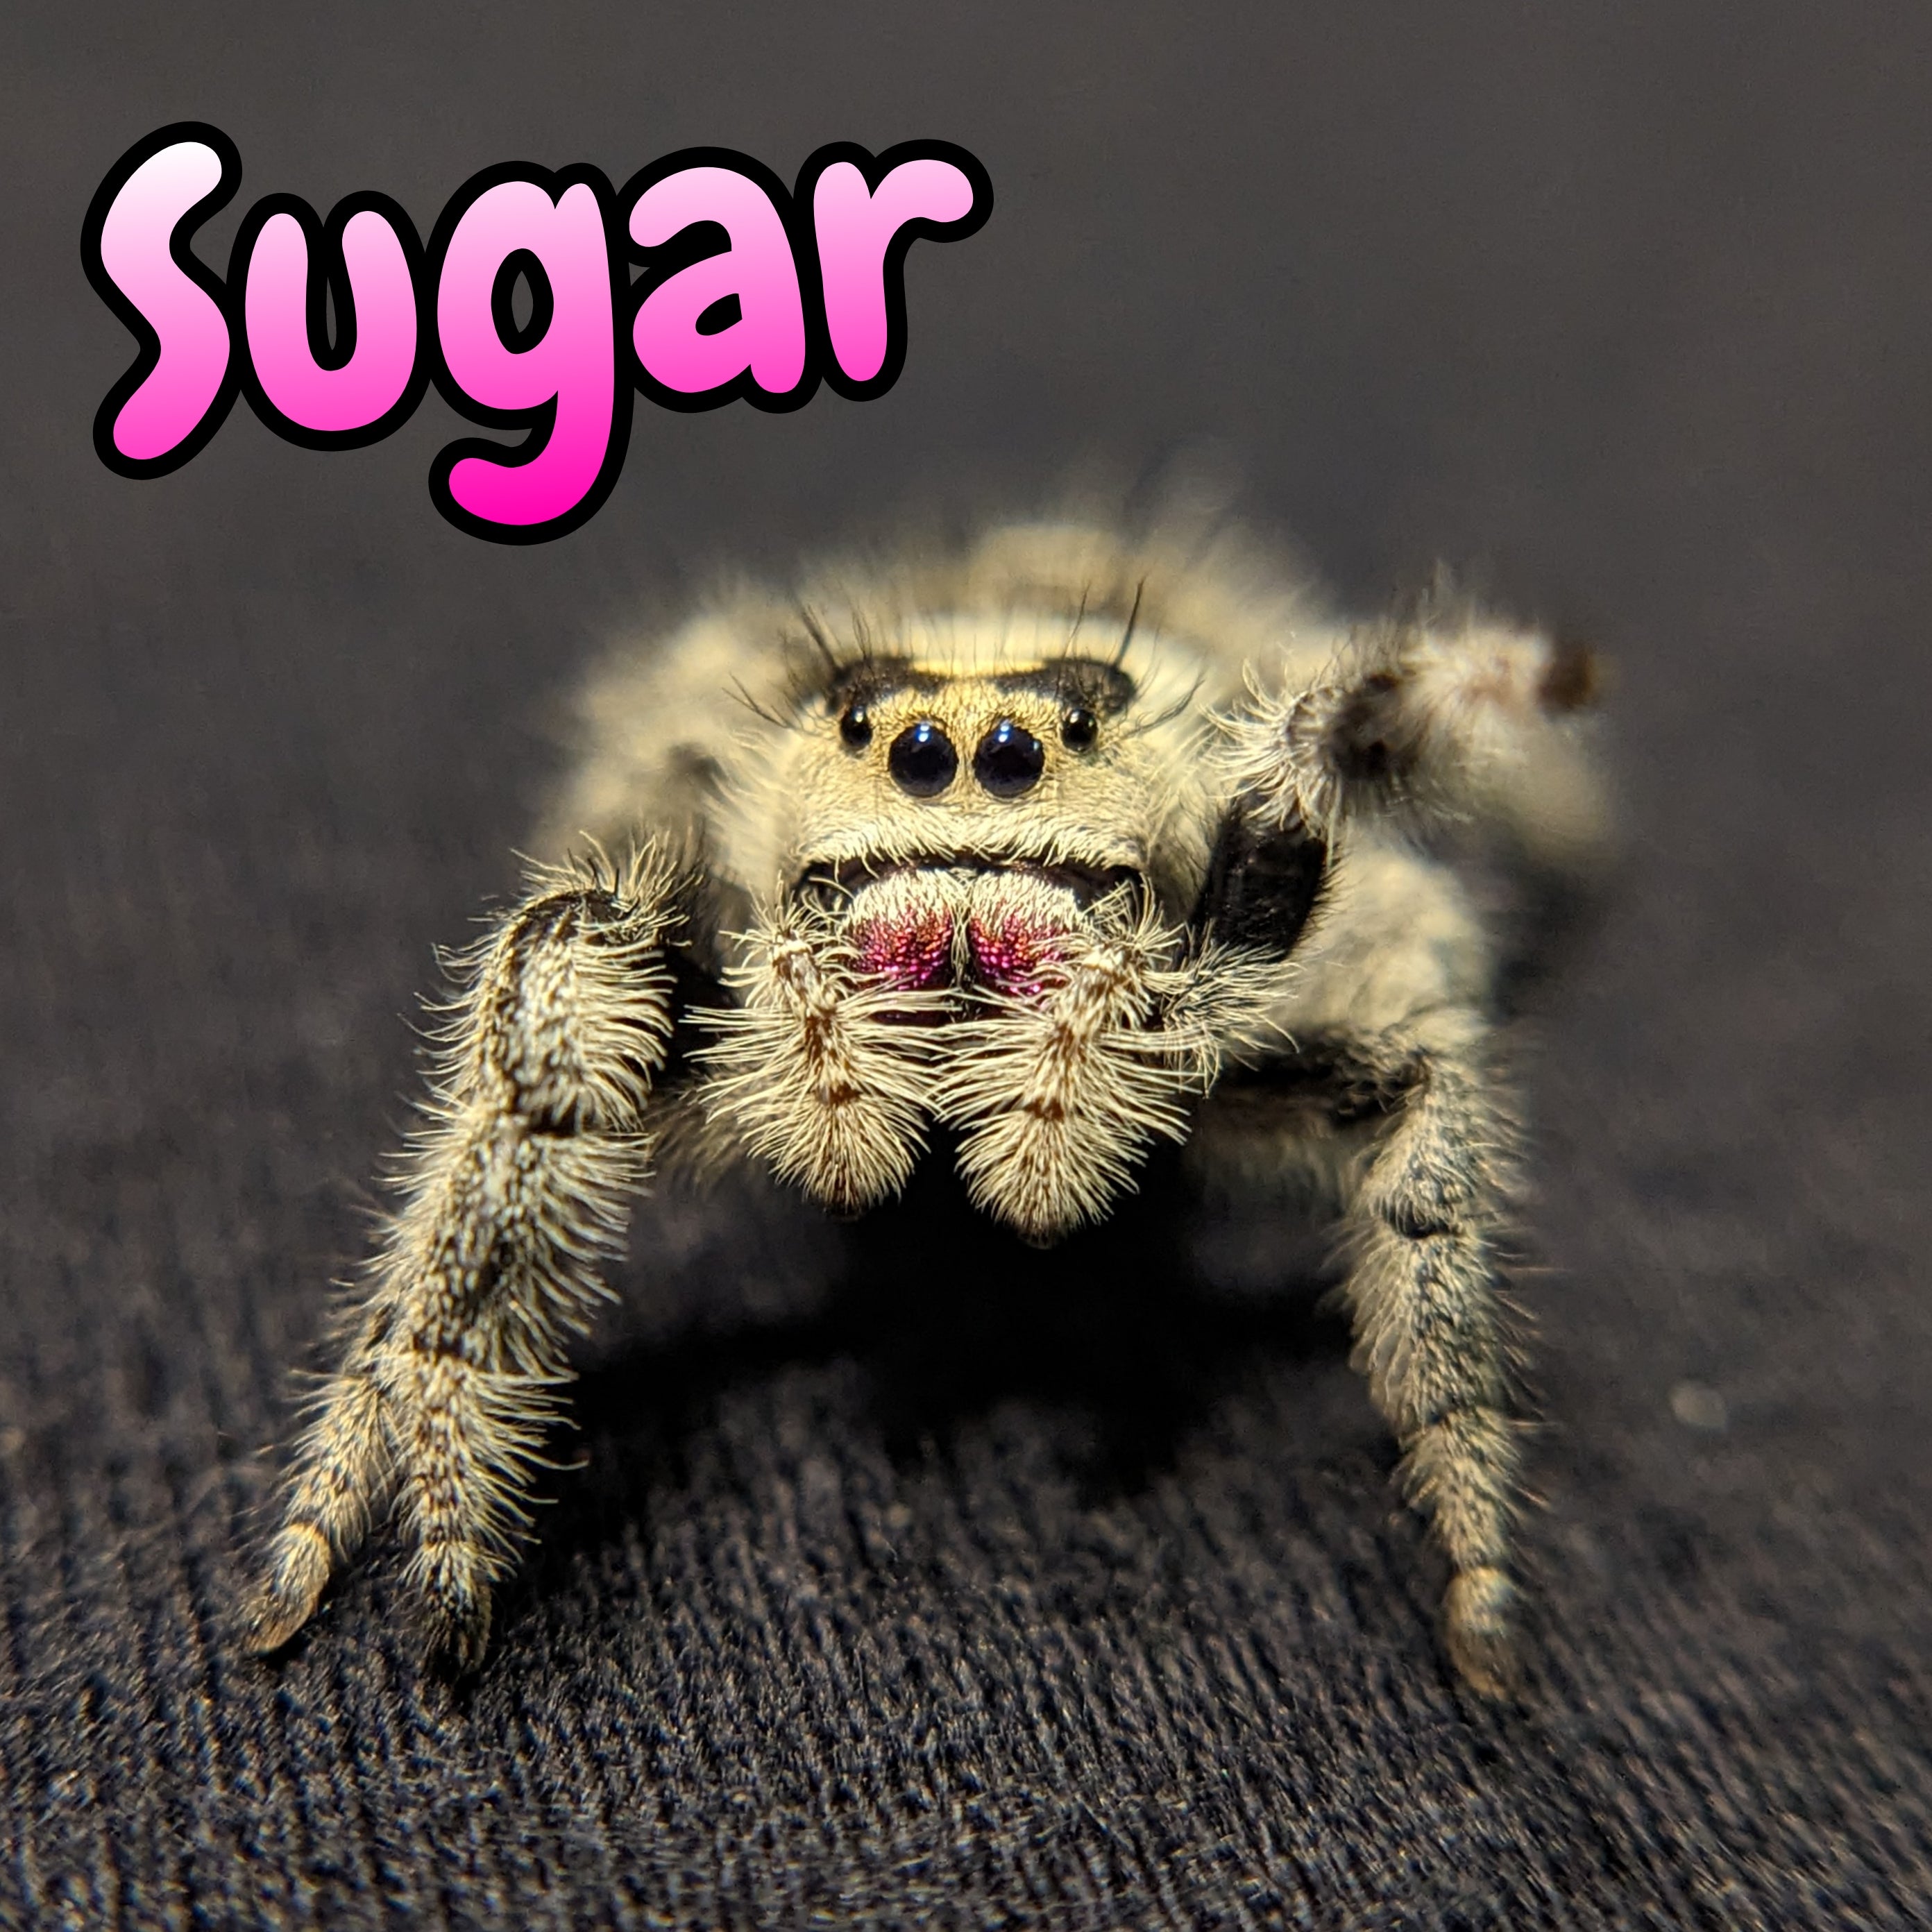 Regal Jumping Spider "Sugar"